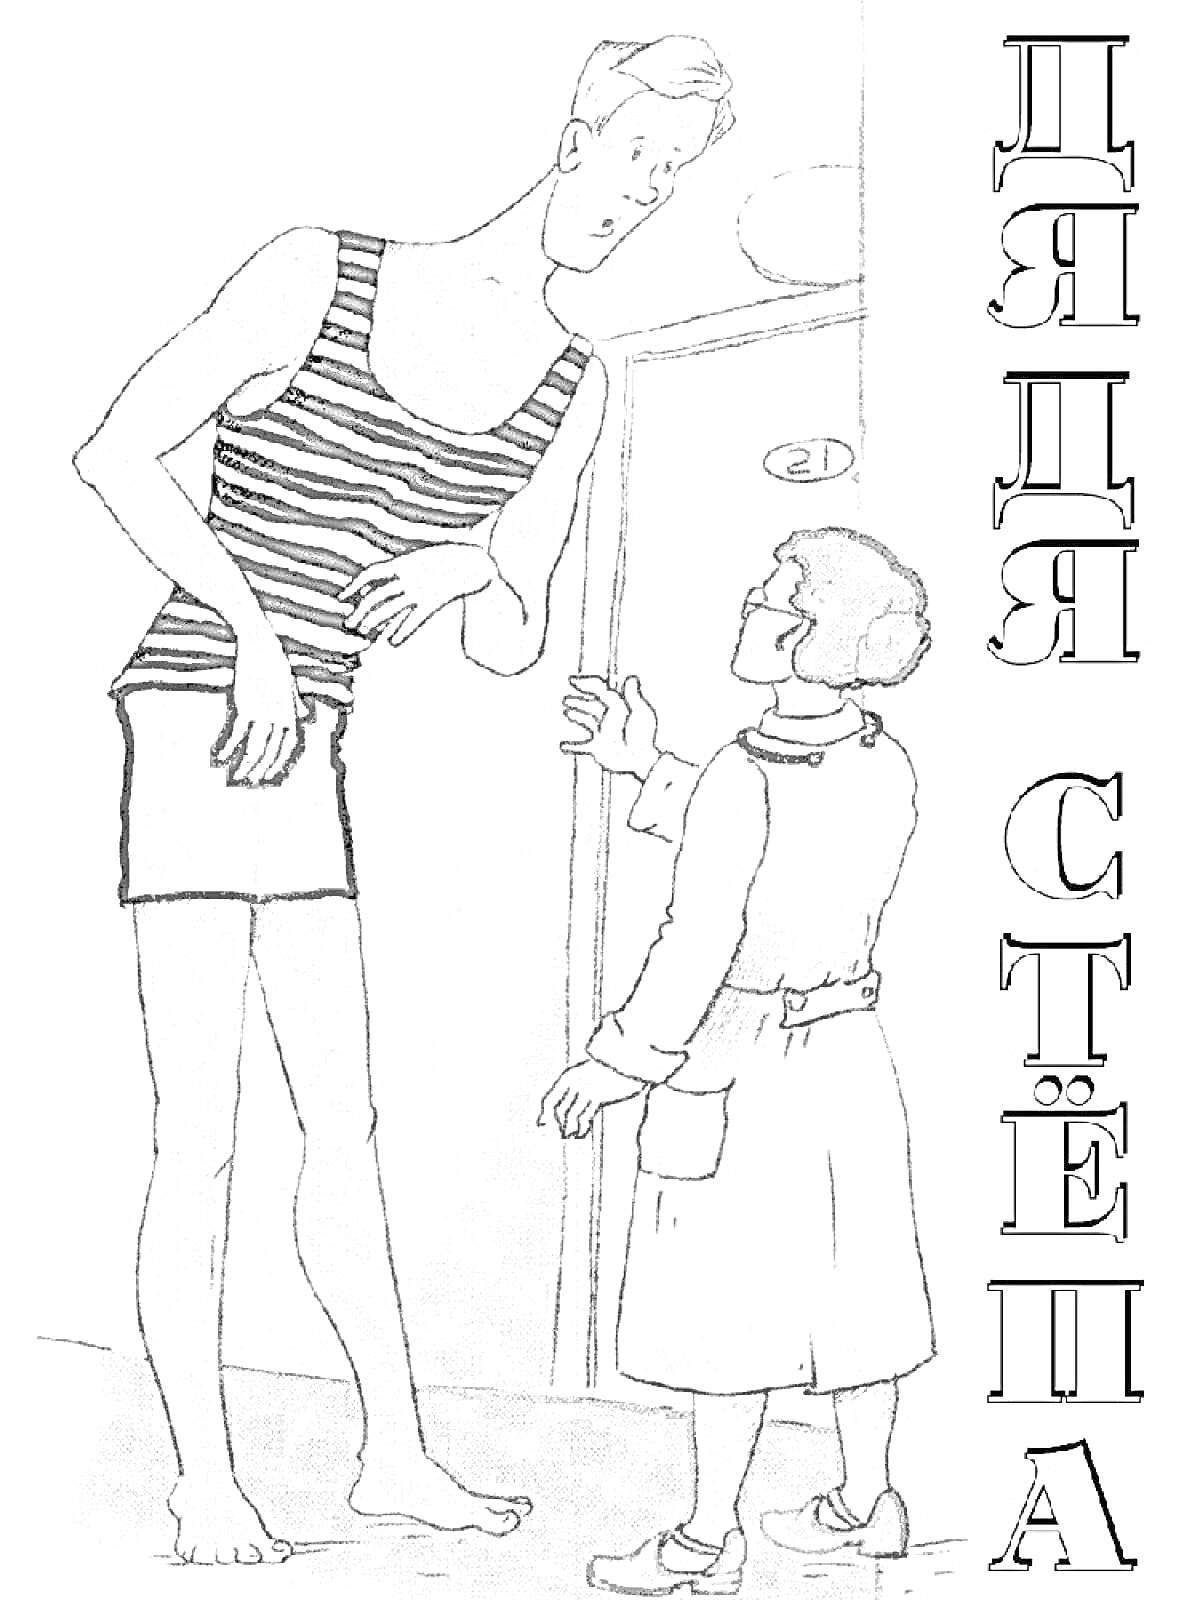 Дядя Степа и женщина рядом с дверью; Дядя Степа стоит в полосатой майке и шортах, женщина в халате и очках, они разговаривают.